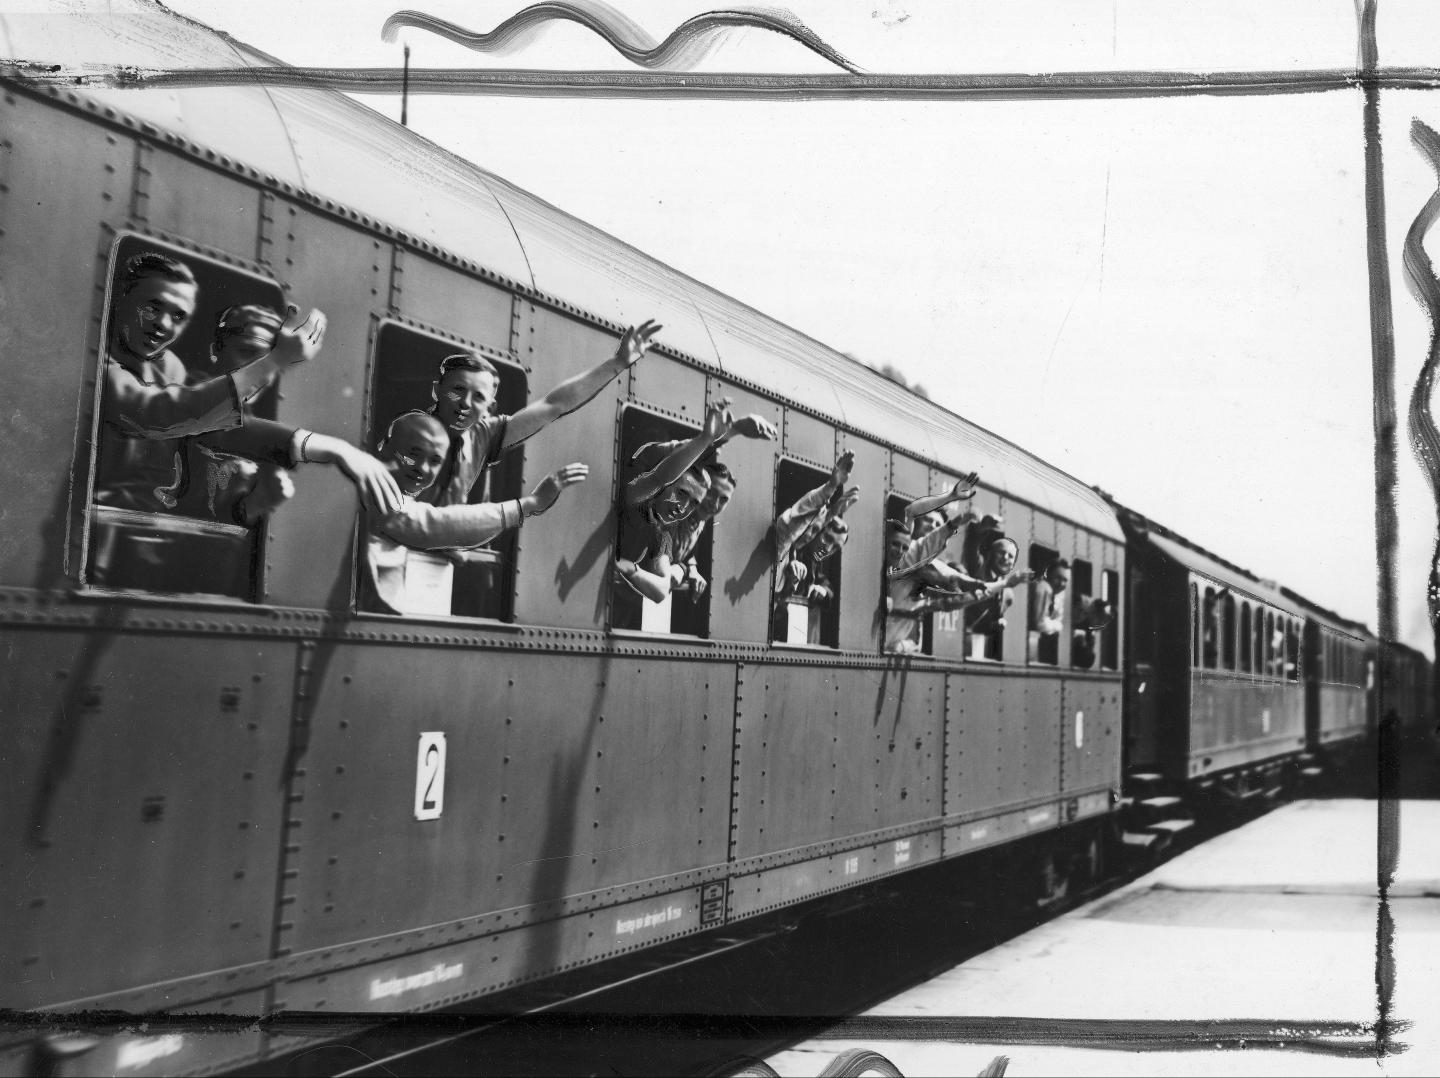 Polscy piłkarze wyruszają w siną dal. Nasi kadrowicze udali się pociągiem z Poznania do Strasbourga, gdzie czekał ich mecz z Brazylią w MŚ 1938.